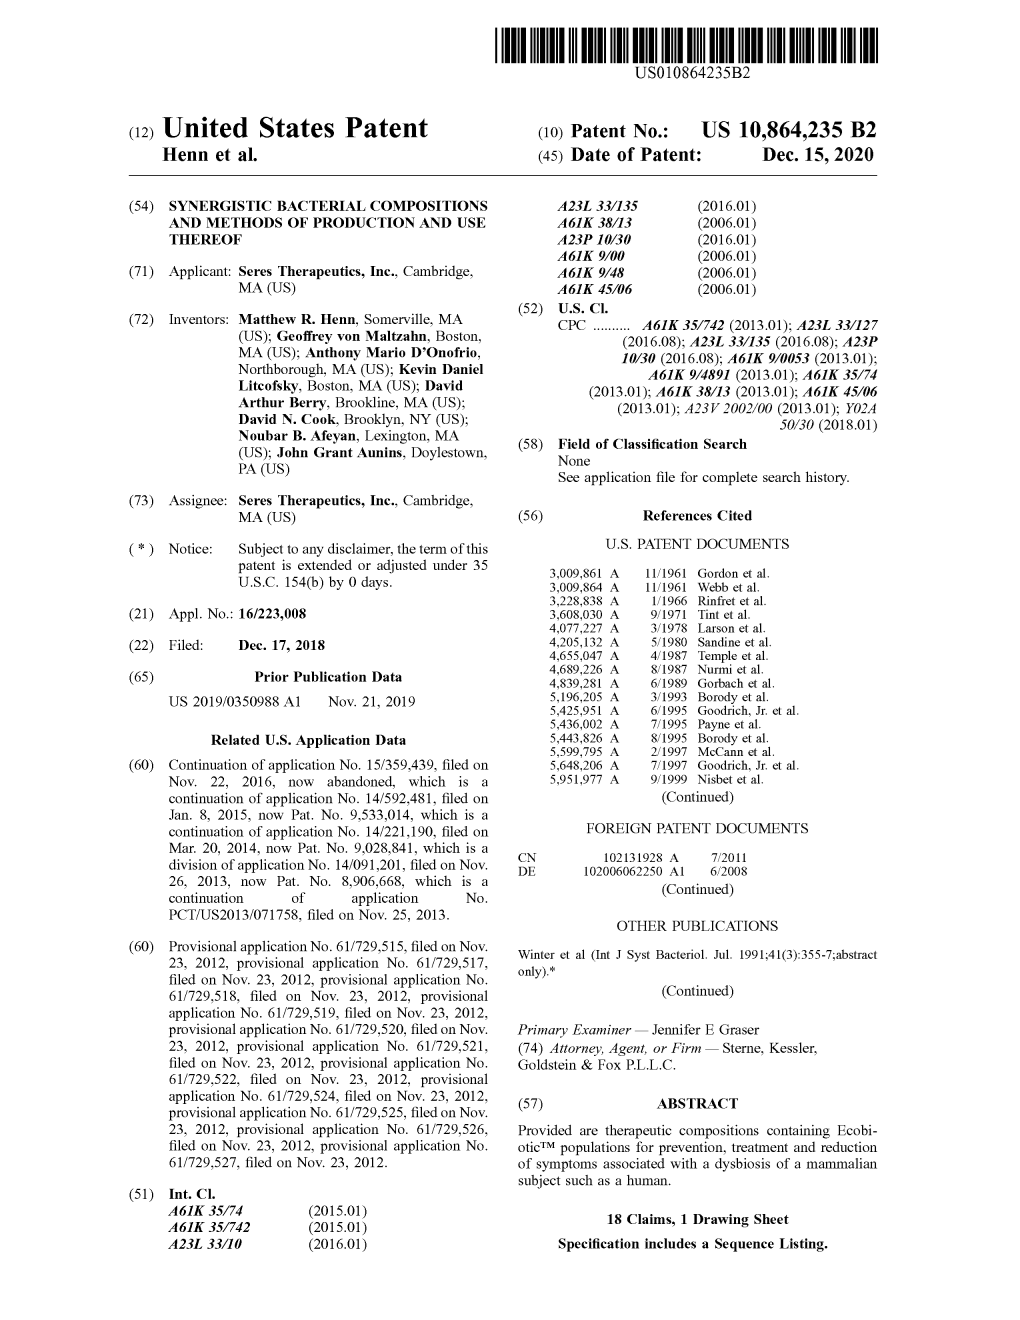 ( 12 ) United States Patent ( 10 ) Patent No .: US 10,864,235 B2 Henn Et Al